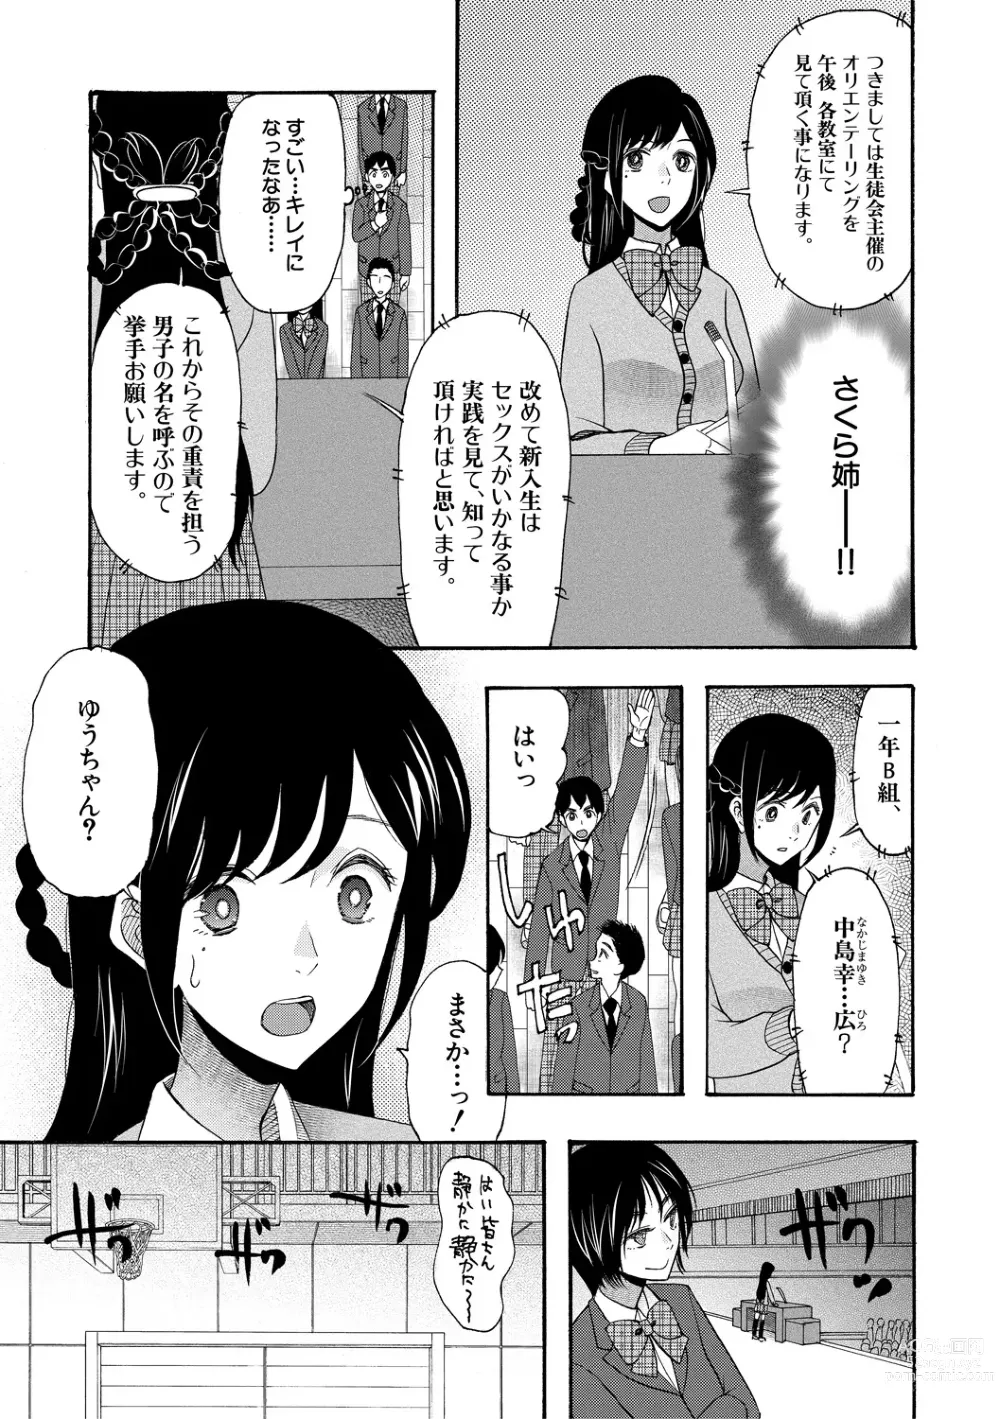 Page 7 of manga Soku Nuki Soku Hame Sakusei Gakuen